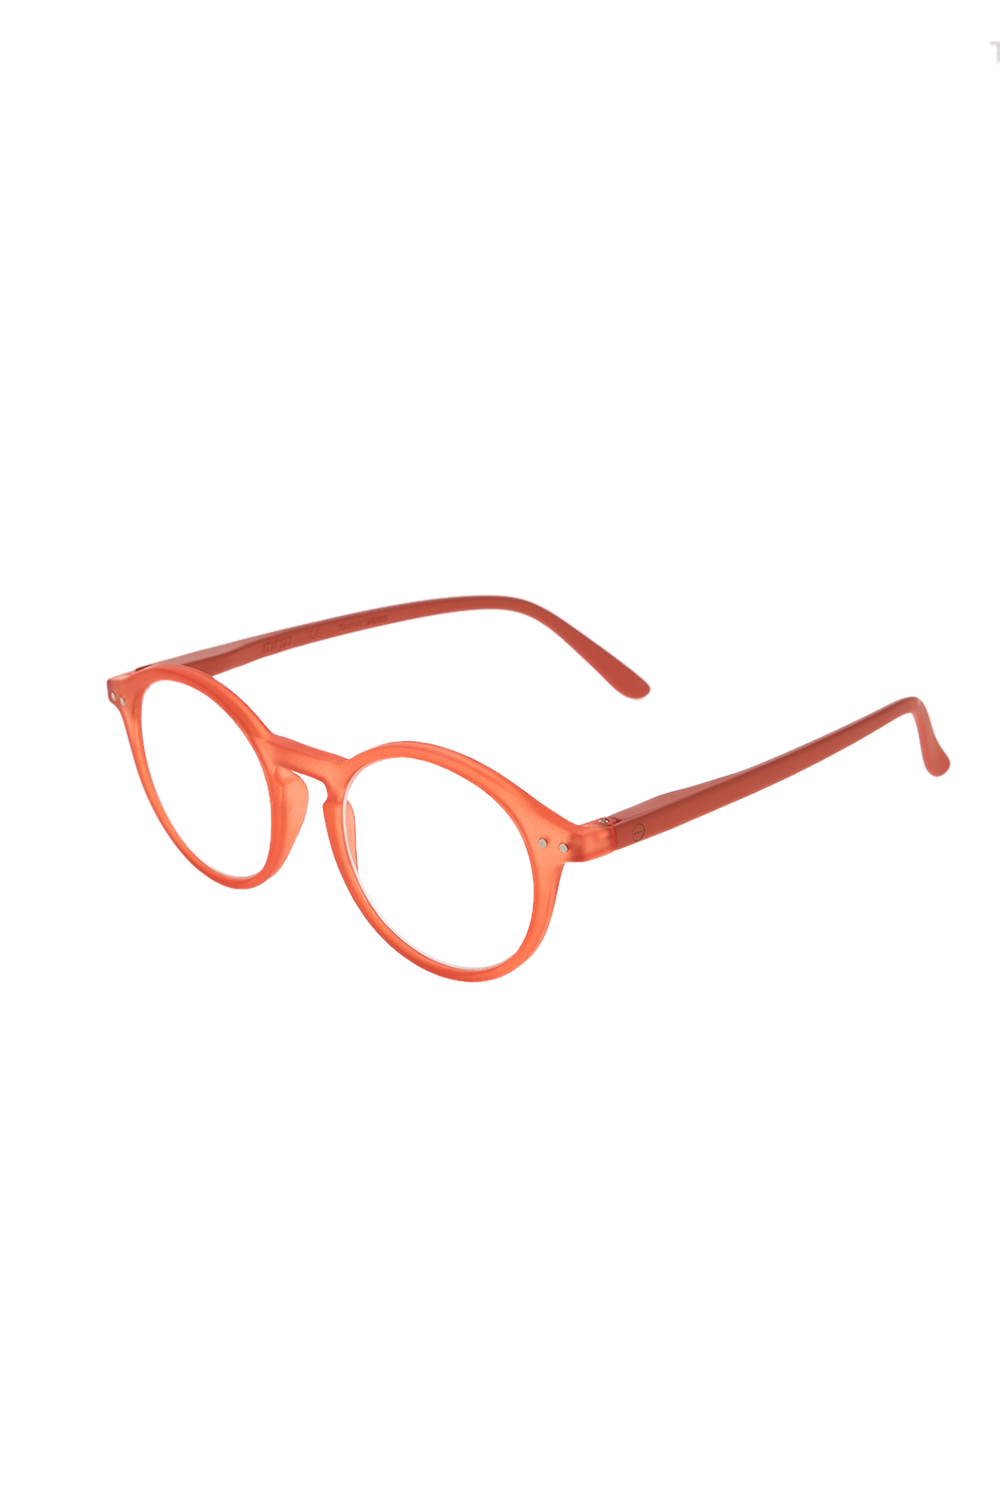 Γυναικεία/Αξεσουάρ/Γυαλιά/Οράσεως IZIPIZI - Unisex γυαλιά οράσεως IZIPIZI READING #D LIM/EDITION πορτοκαλί